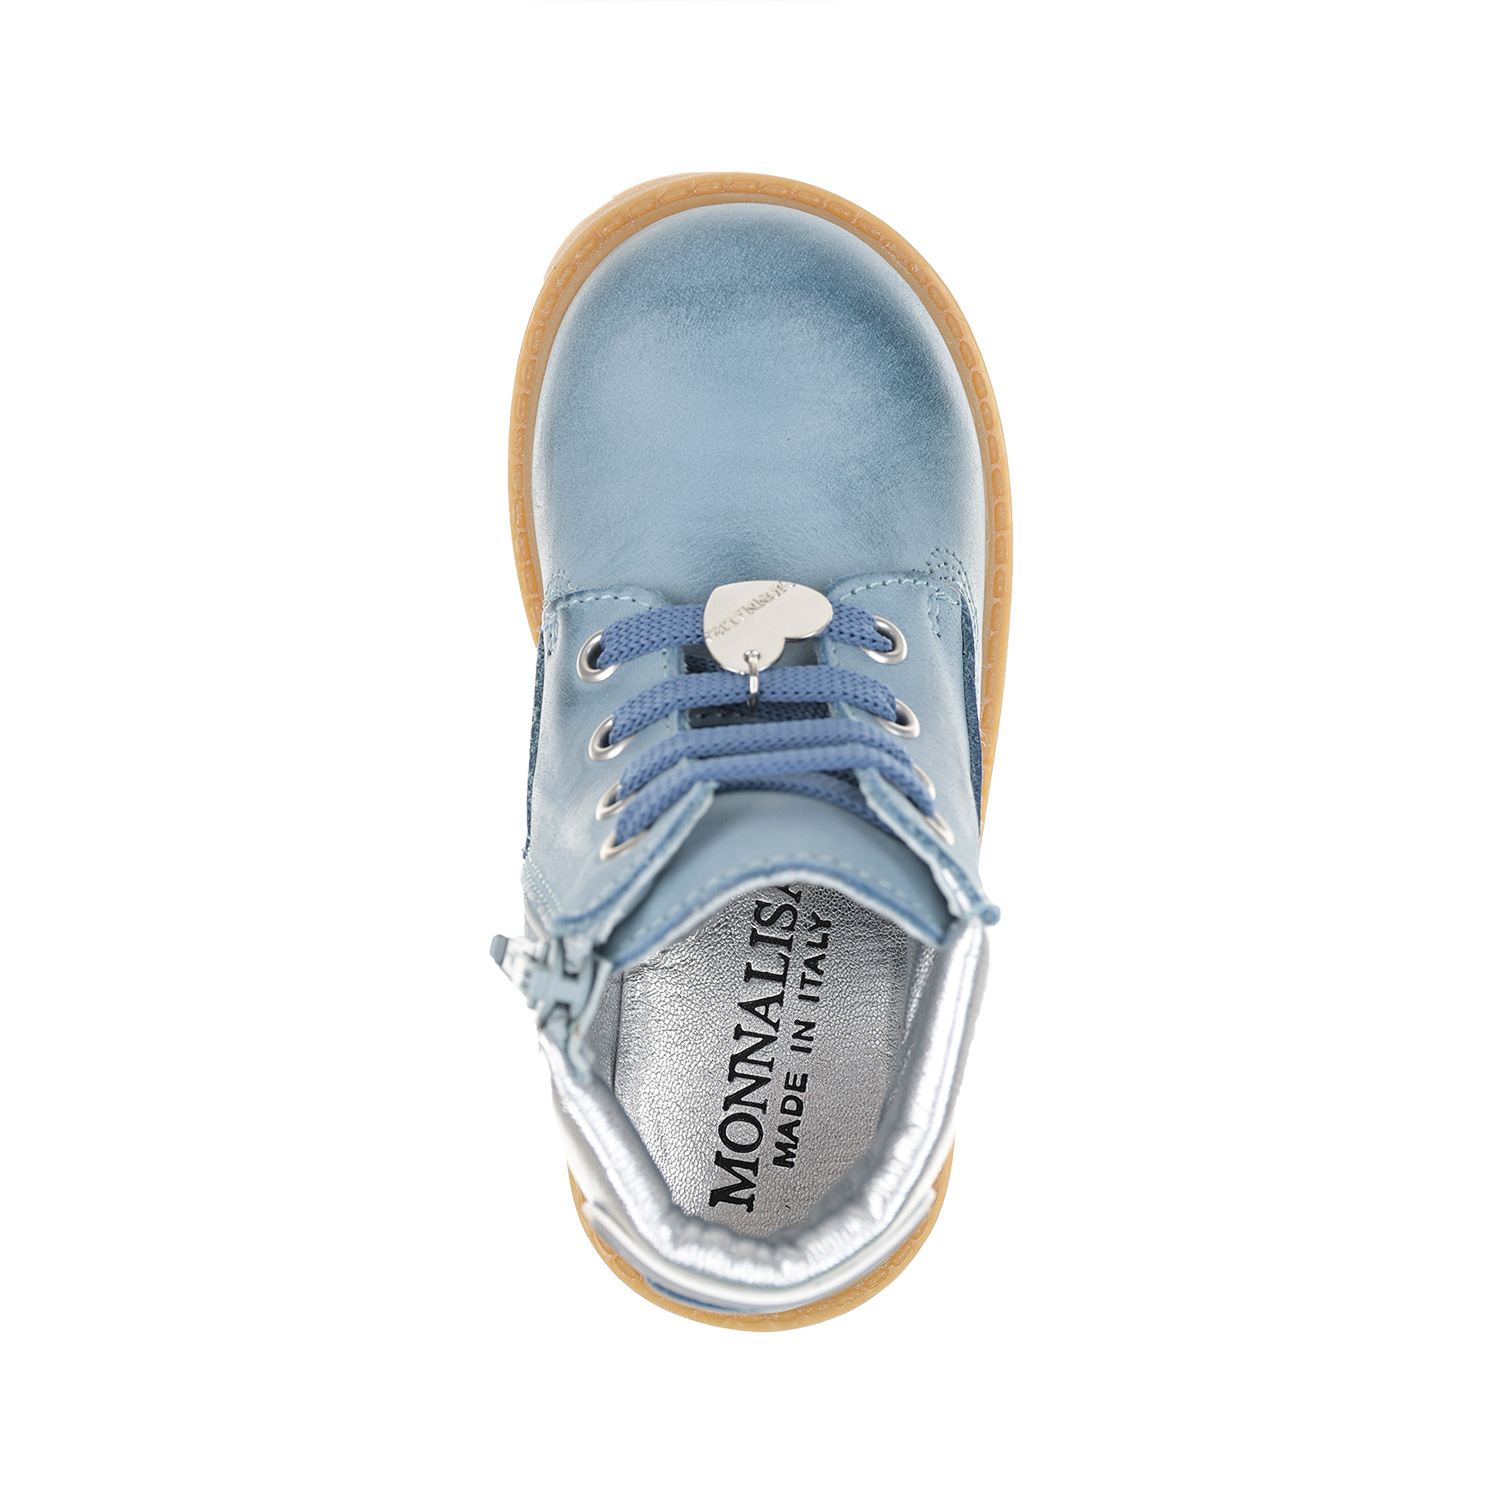 Синие ботинки с серебристым задником Monnalisa детские, размер 24, цвет синий - фото 4